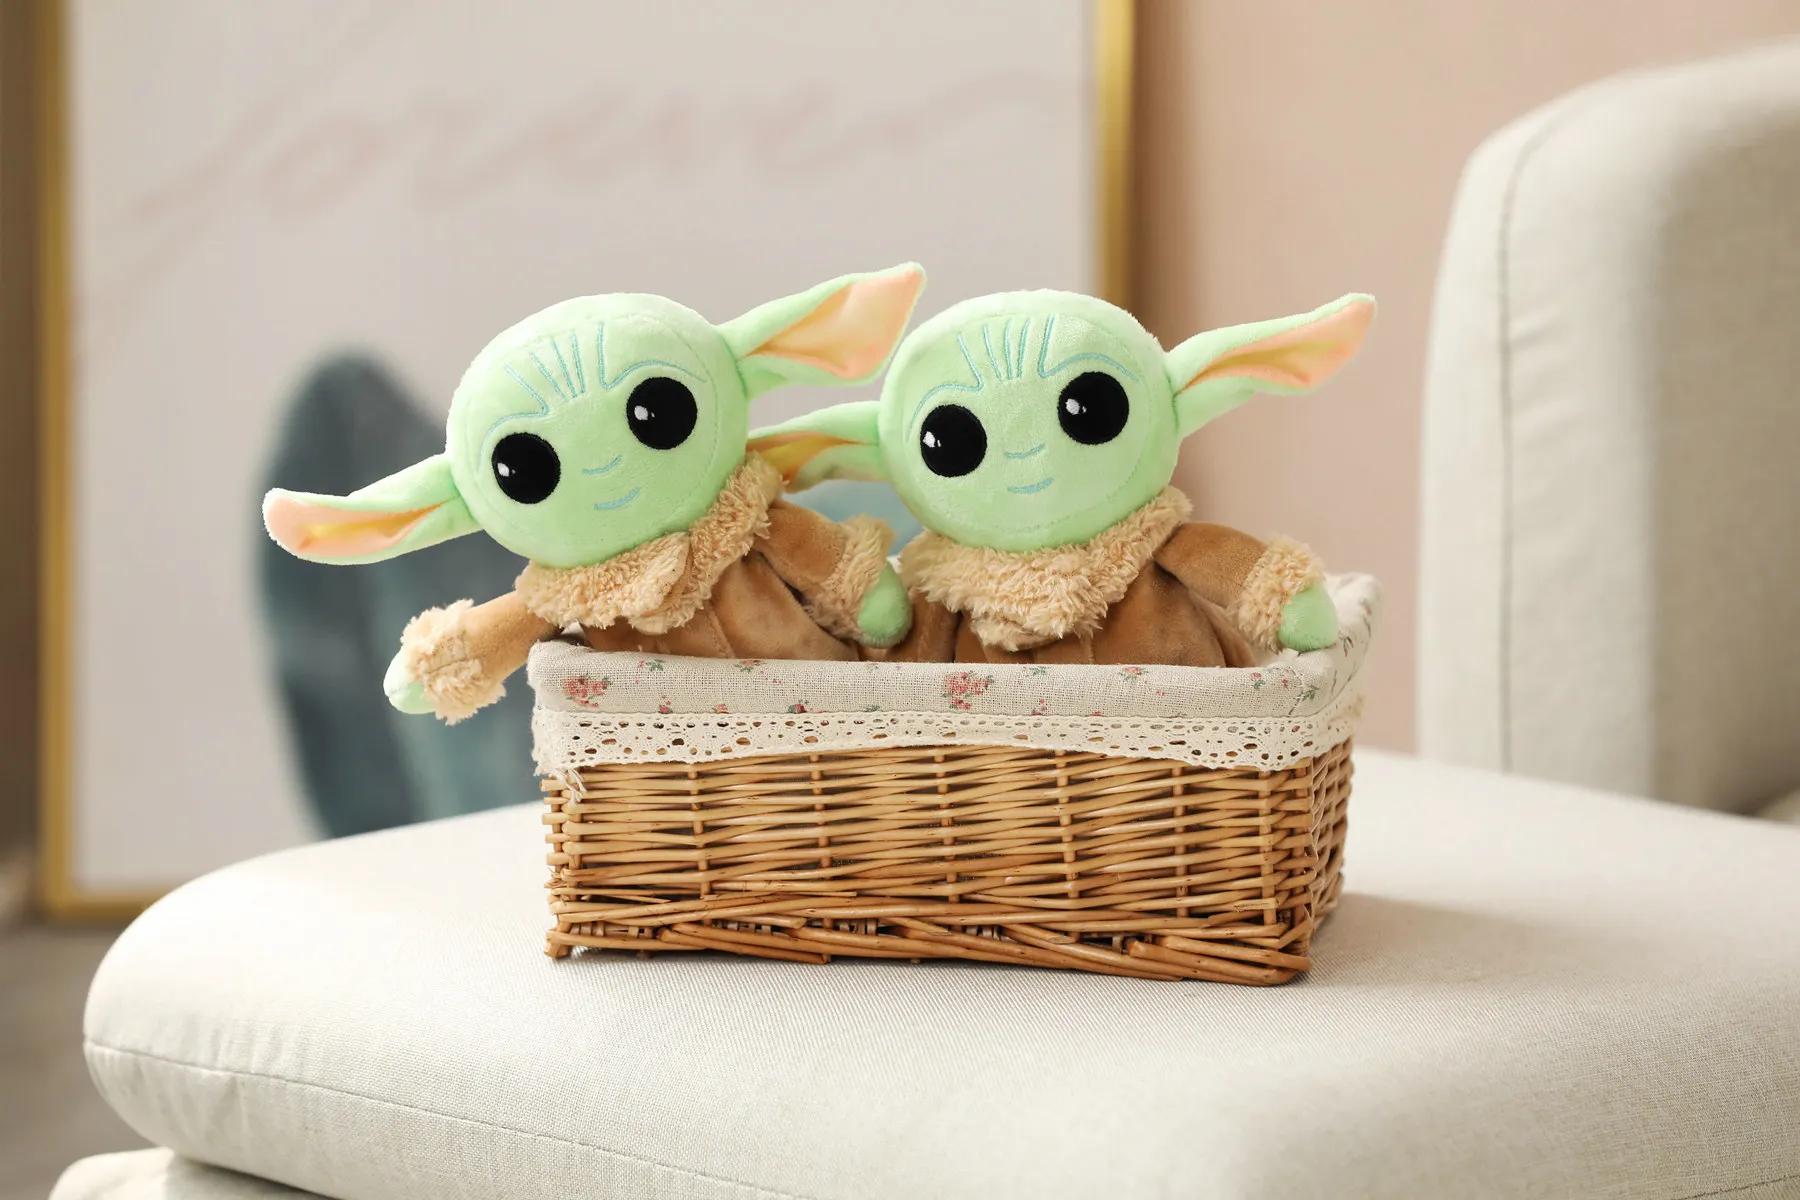 Star Wars Mandalorian Baby Yoda Puppe Stofftier Plüschtier Spielzeug Geschenke 